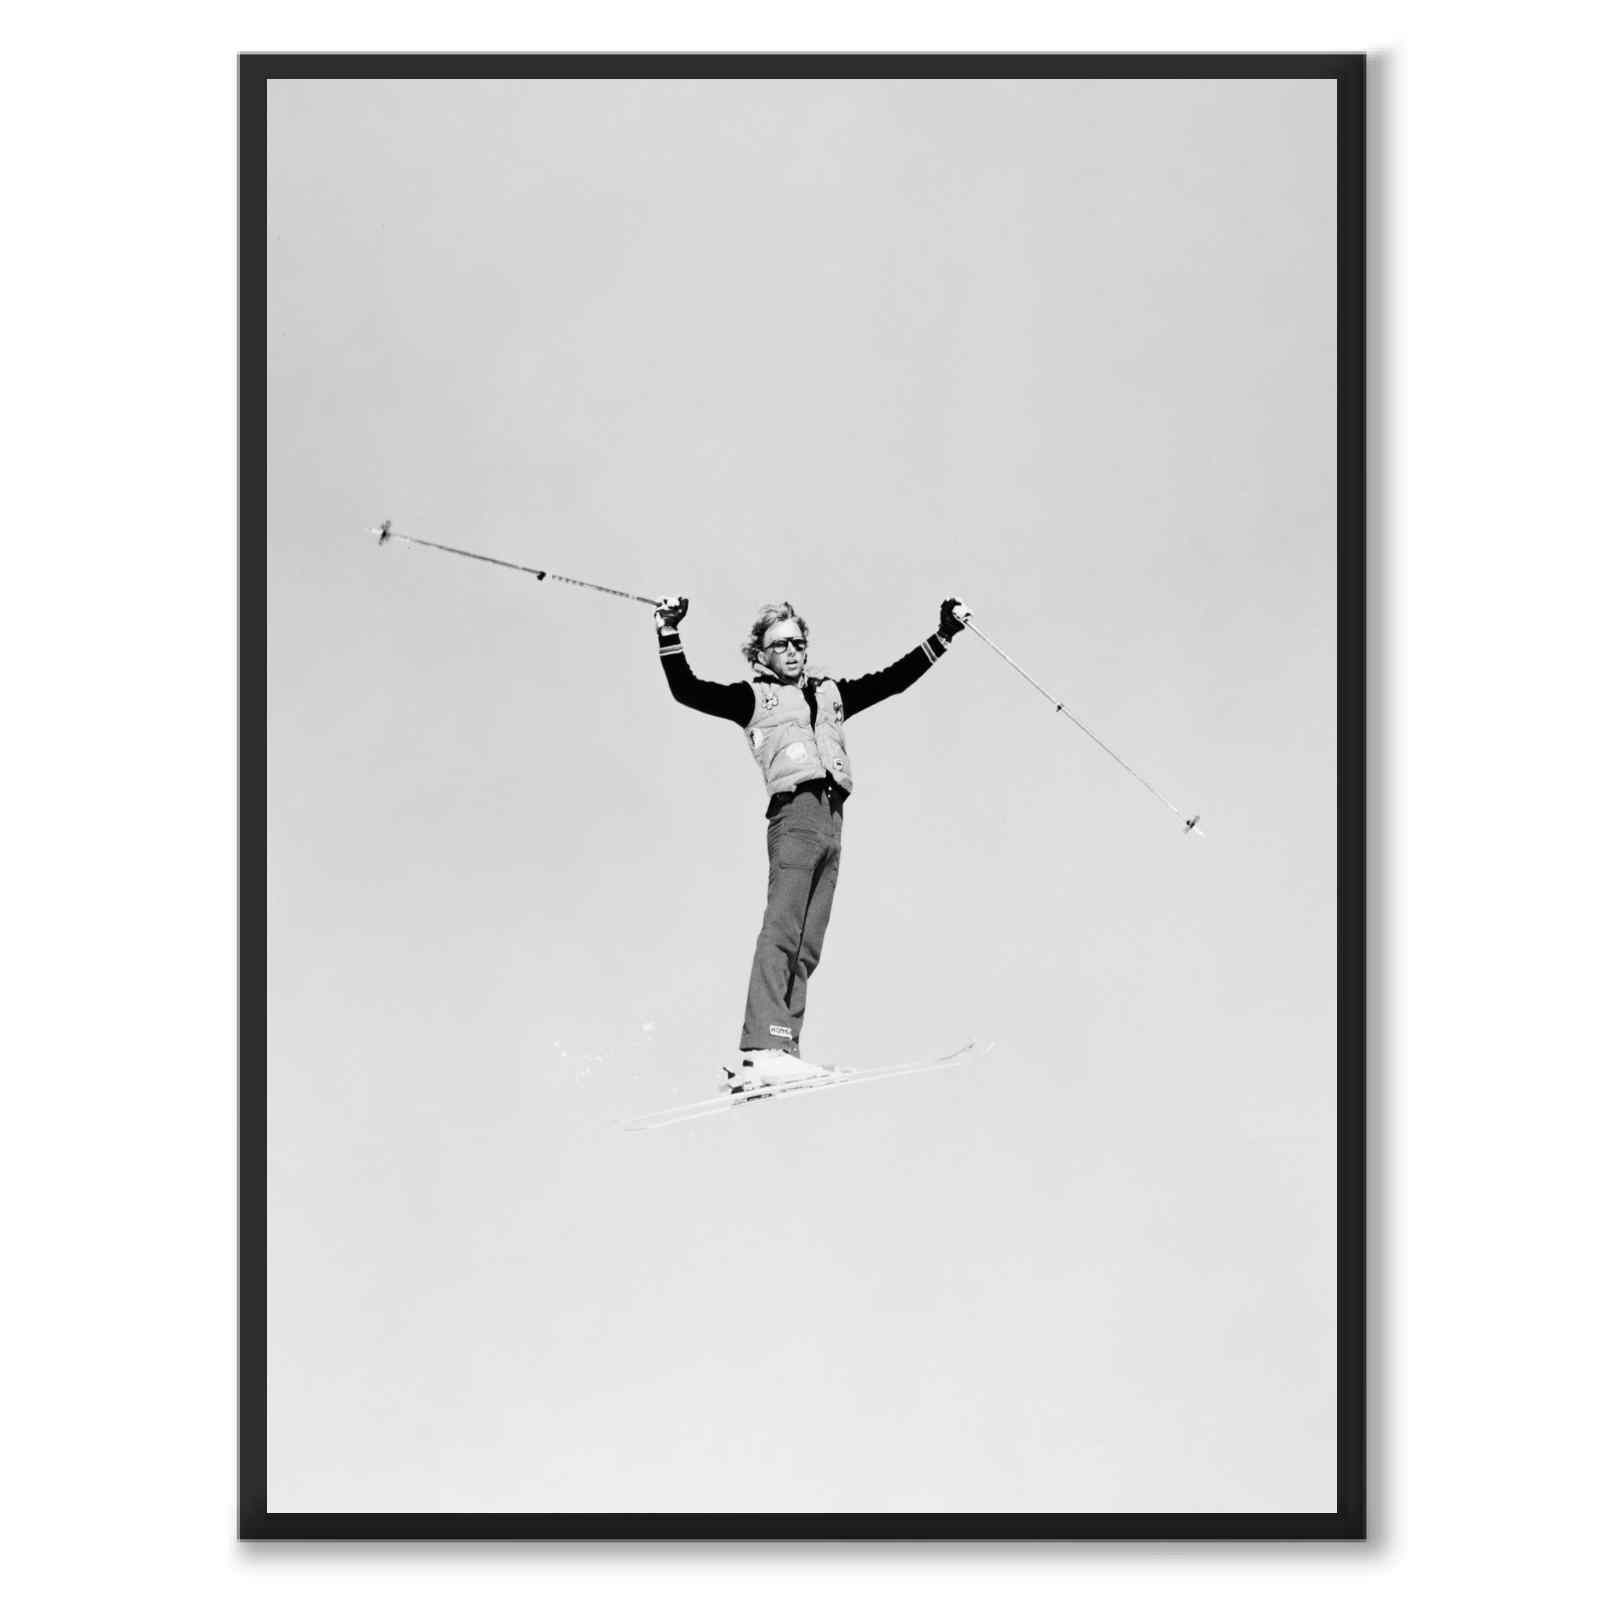 70s Skier